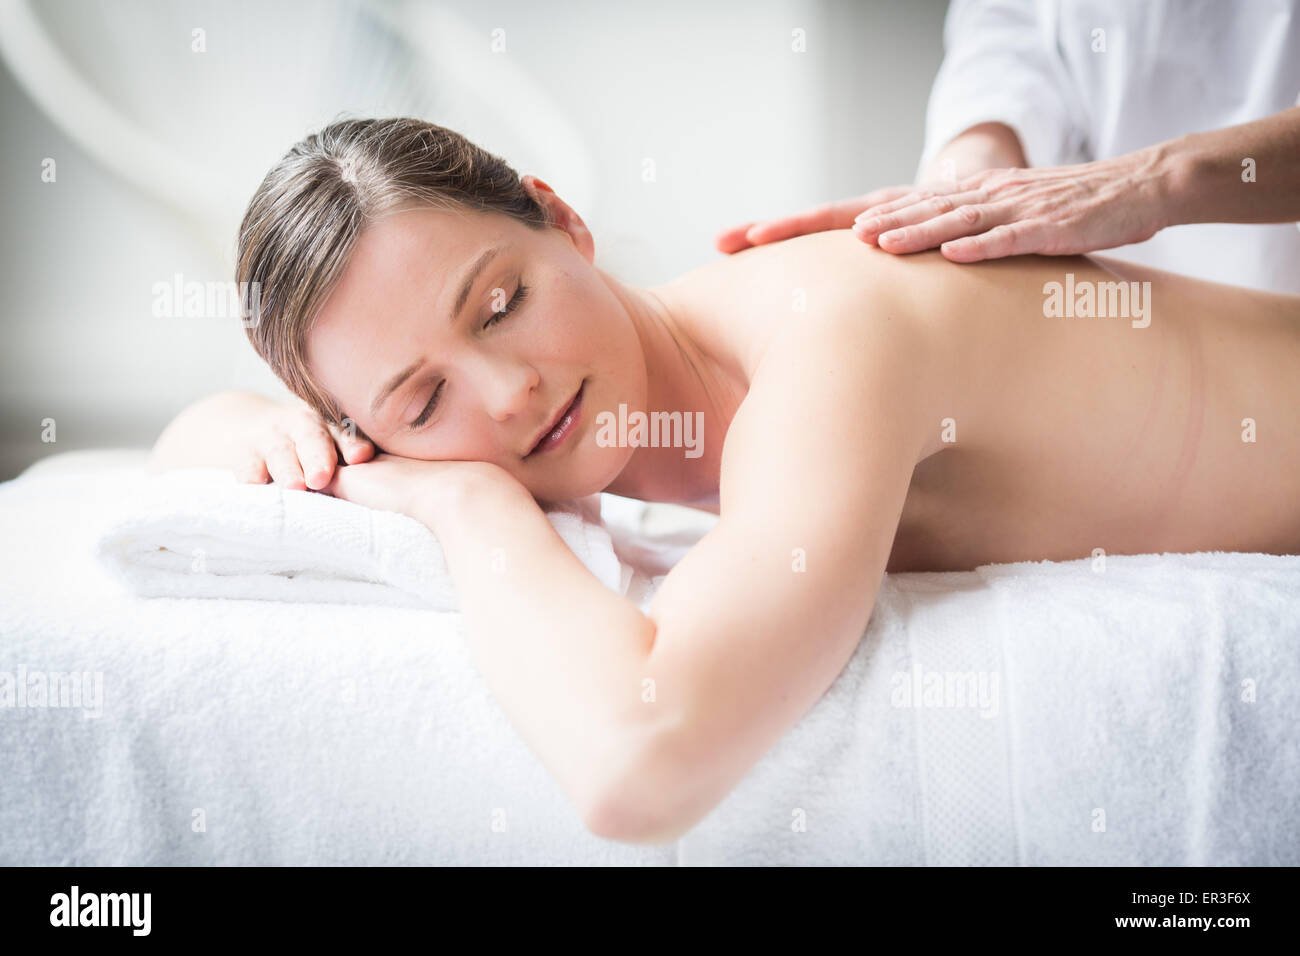 Mujer recibiendo un masaje en la espalda. Foto de stock